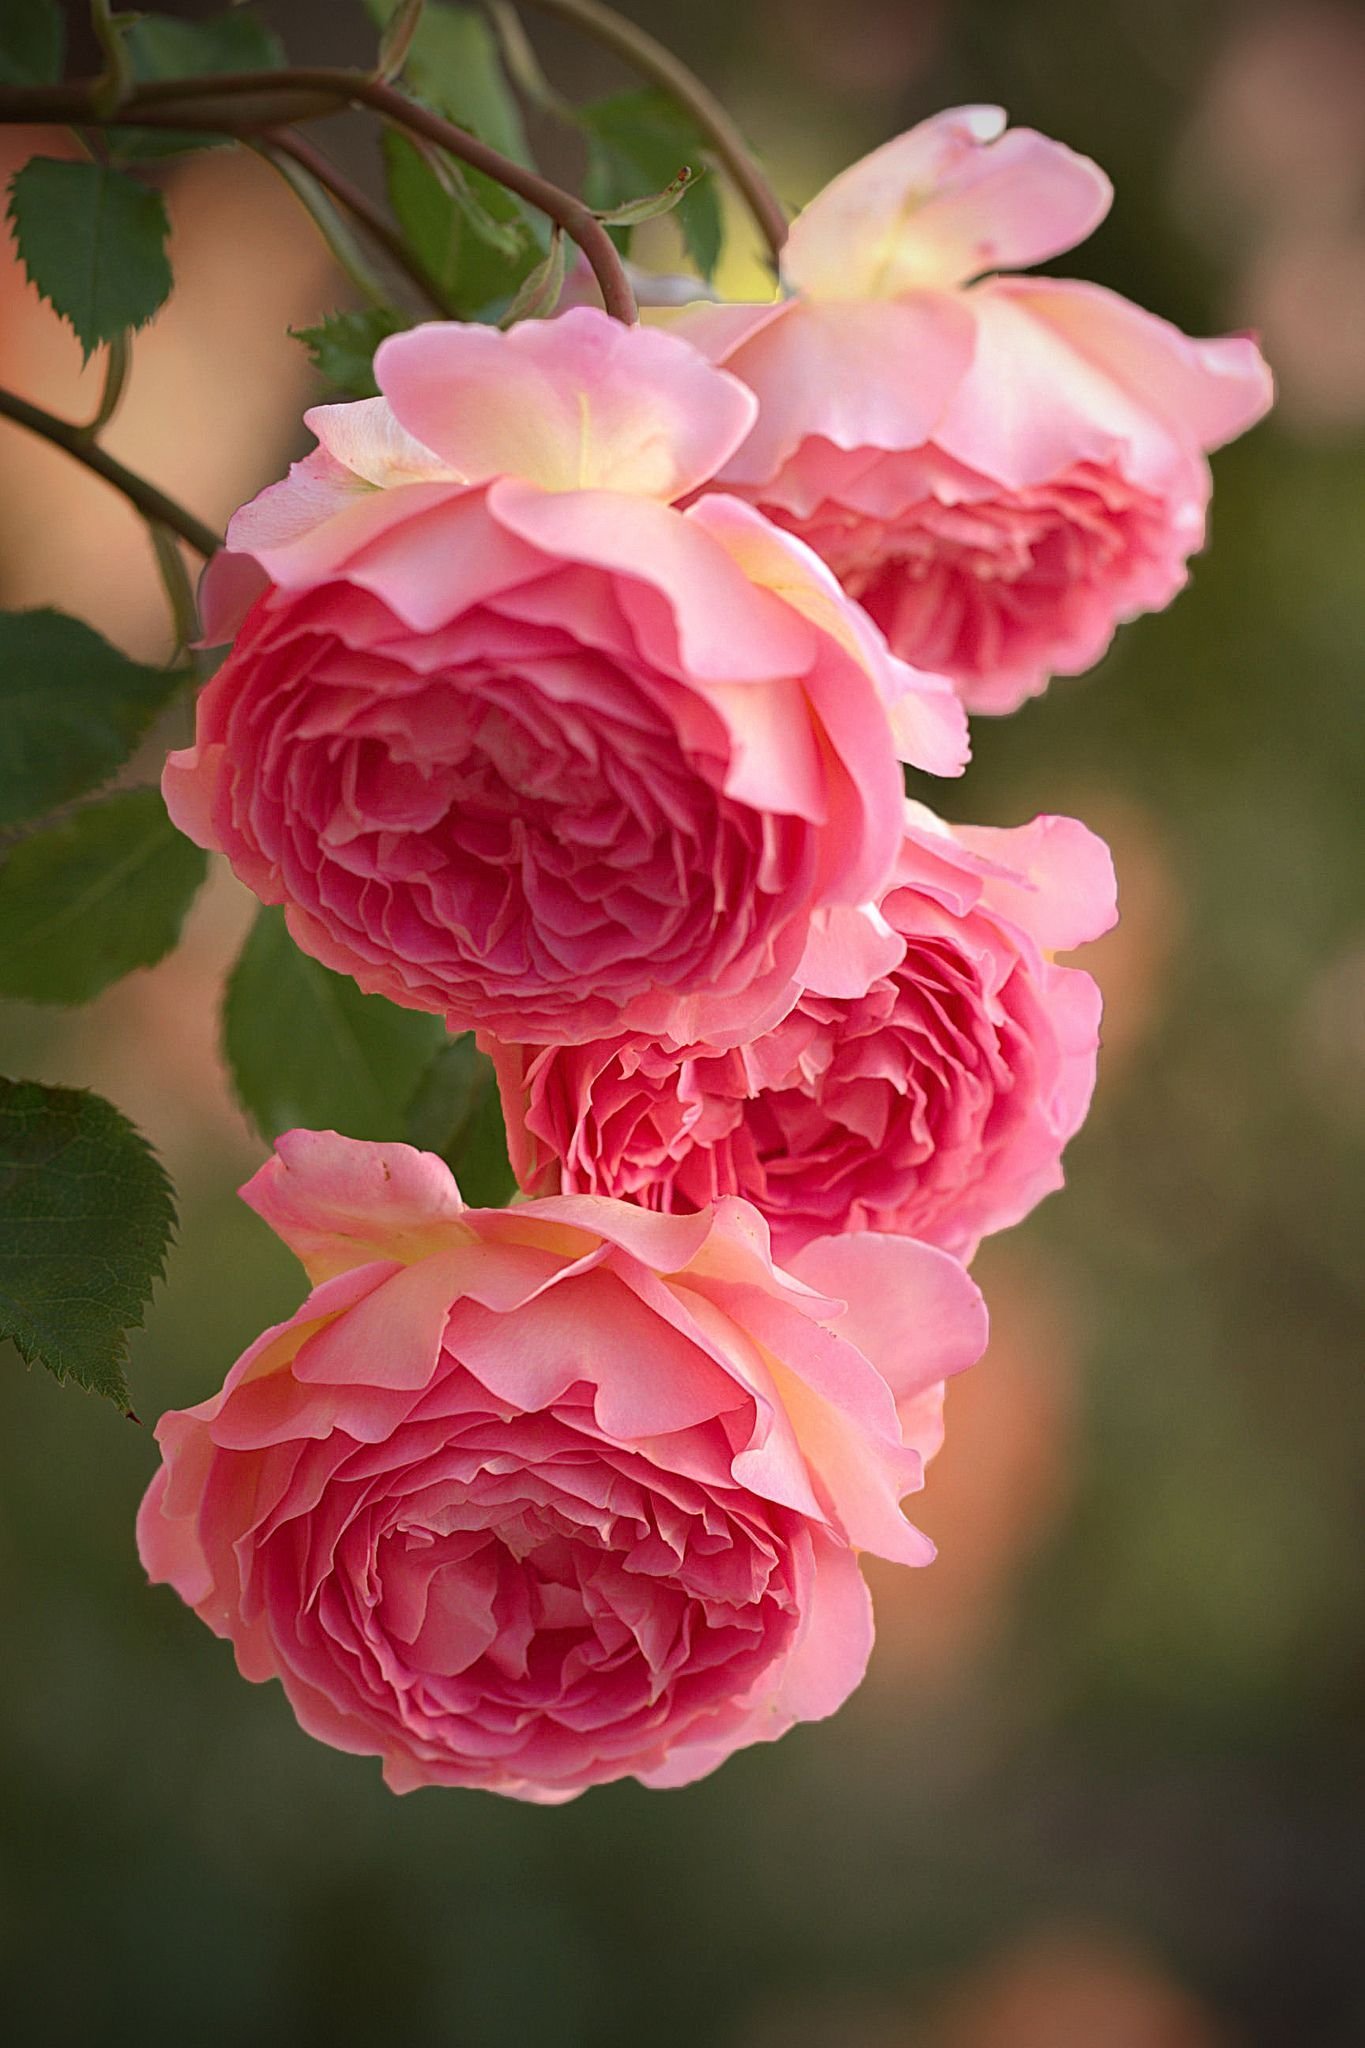 My flowers are beautiful. Розы флорибунда бьютифул Гарден.